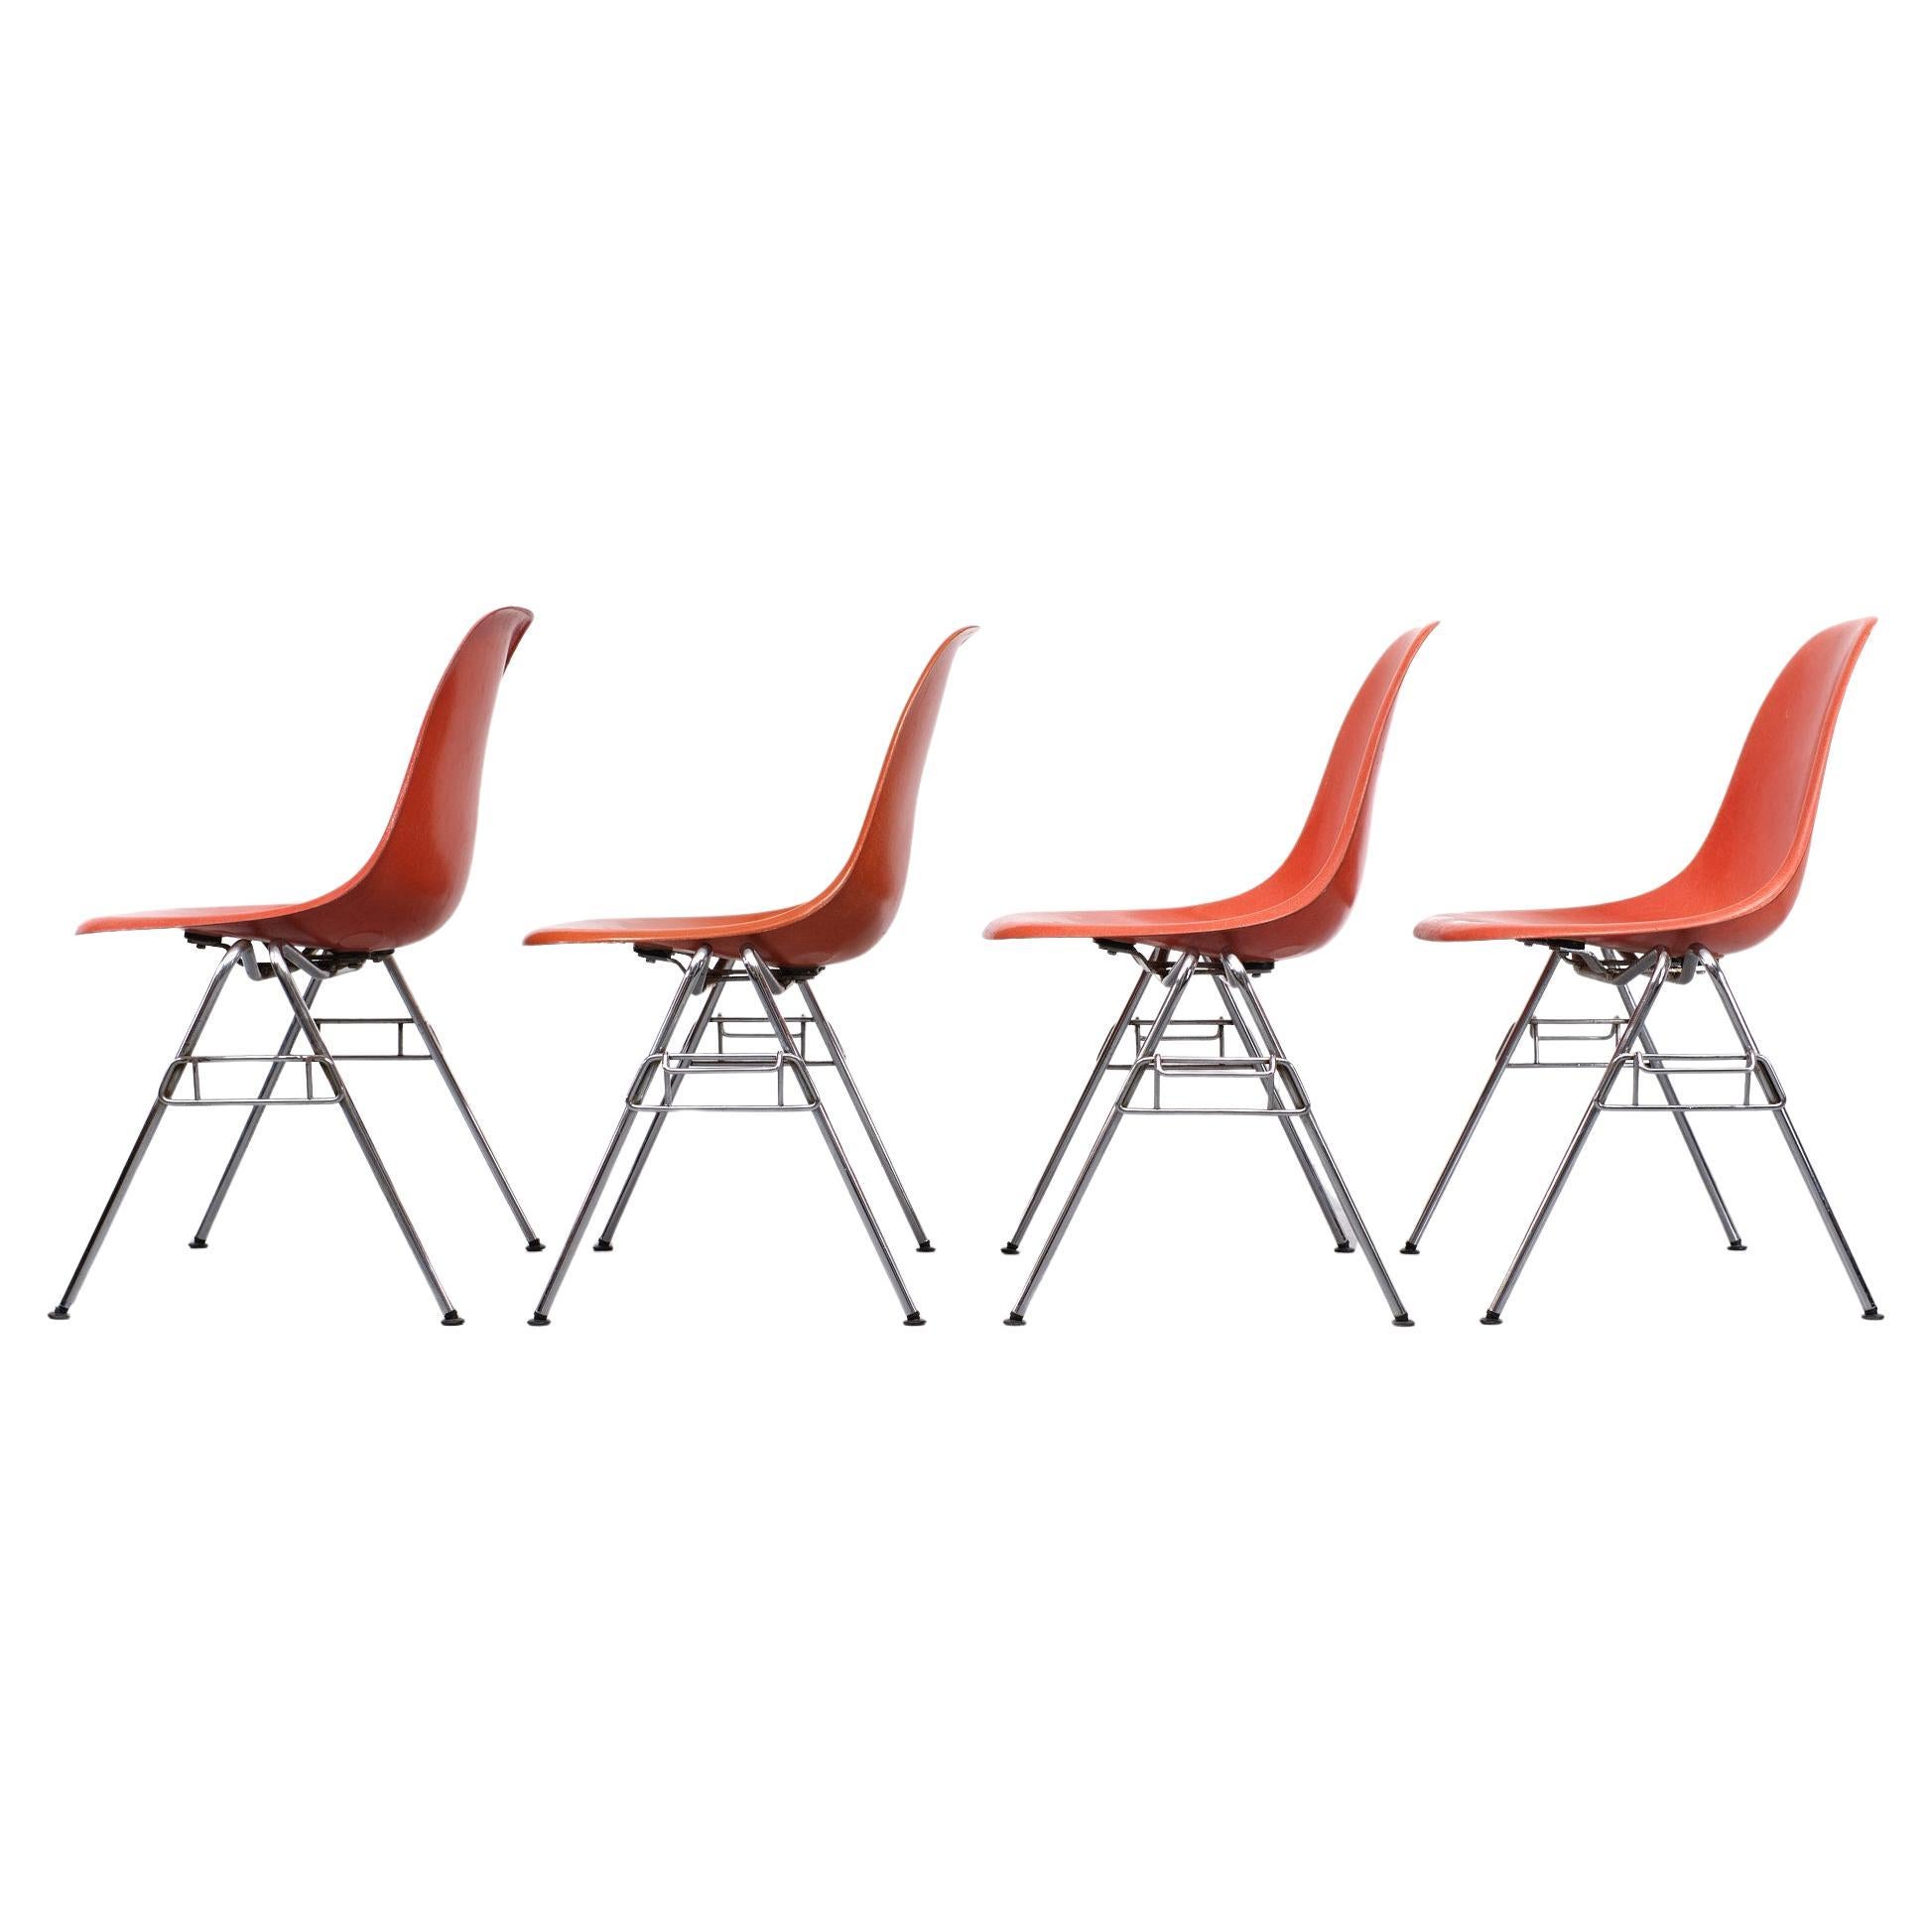 4 chaises empilables DSS en fibre de verre. Charles et Ray Eames pour Herman Miller 1970. 
Belle couleur orange vif. Pieds chromés. Chaises vintage originales. Quelques vieilles réparations 
sous les chaises. Toutes les chaises sont